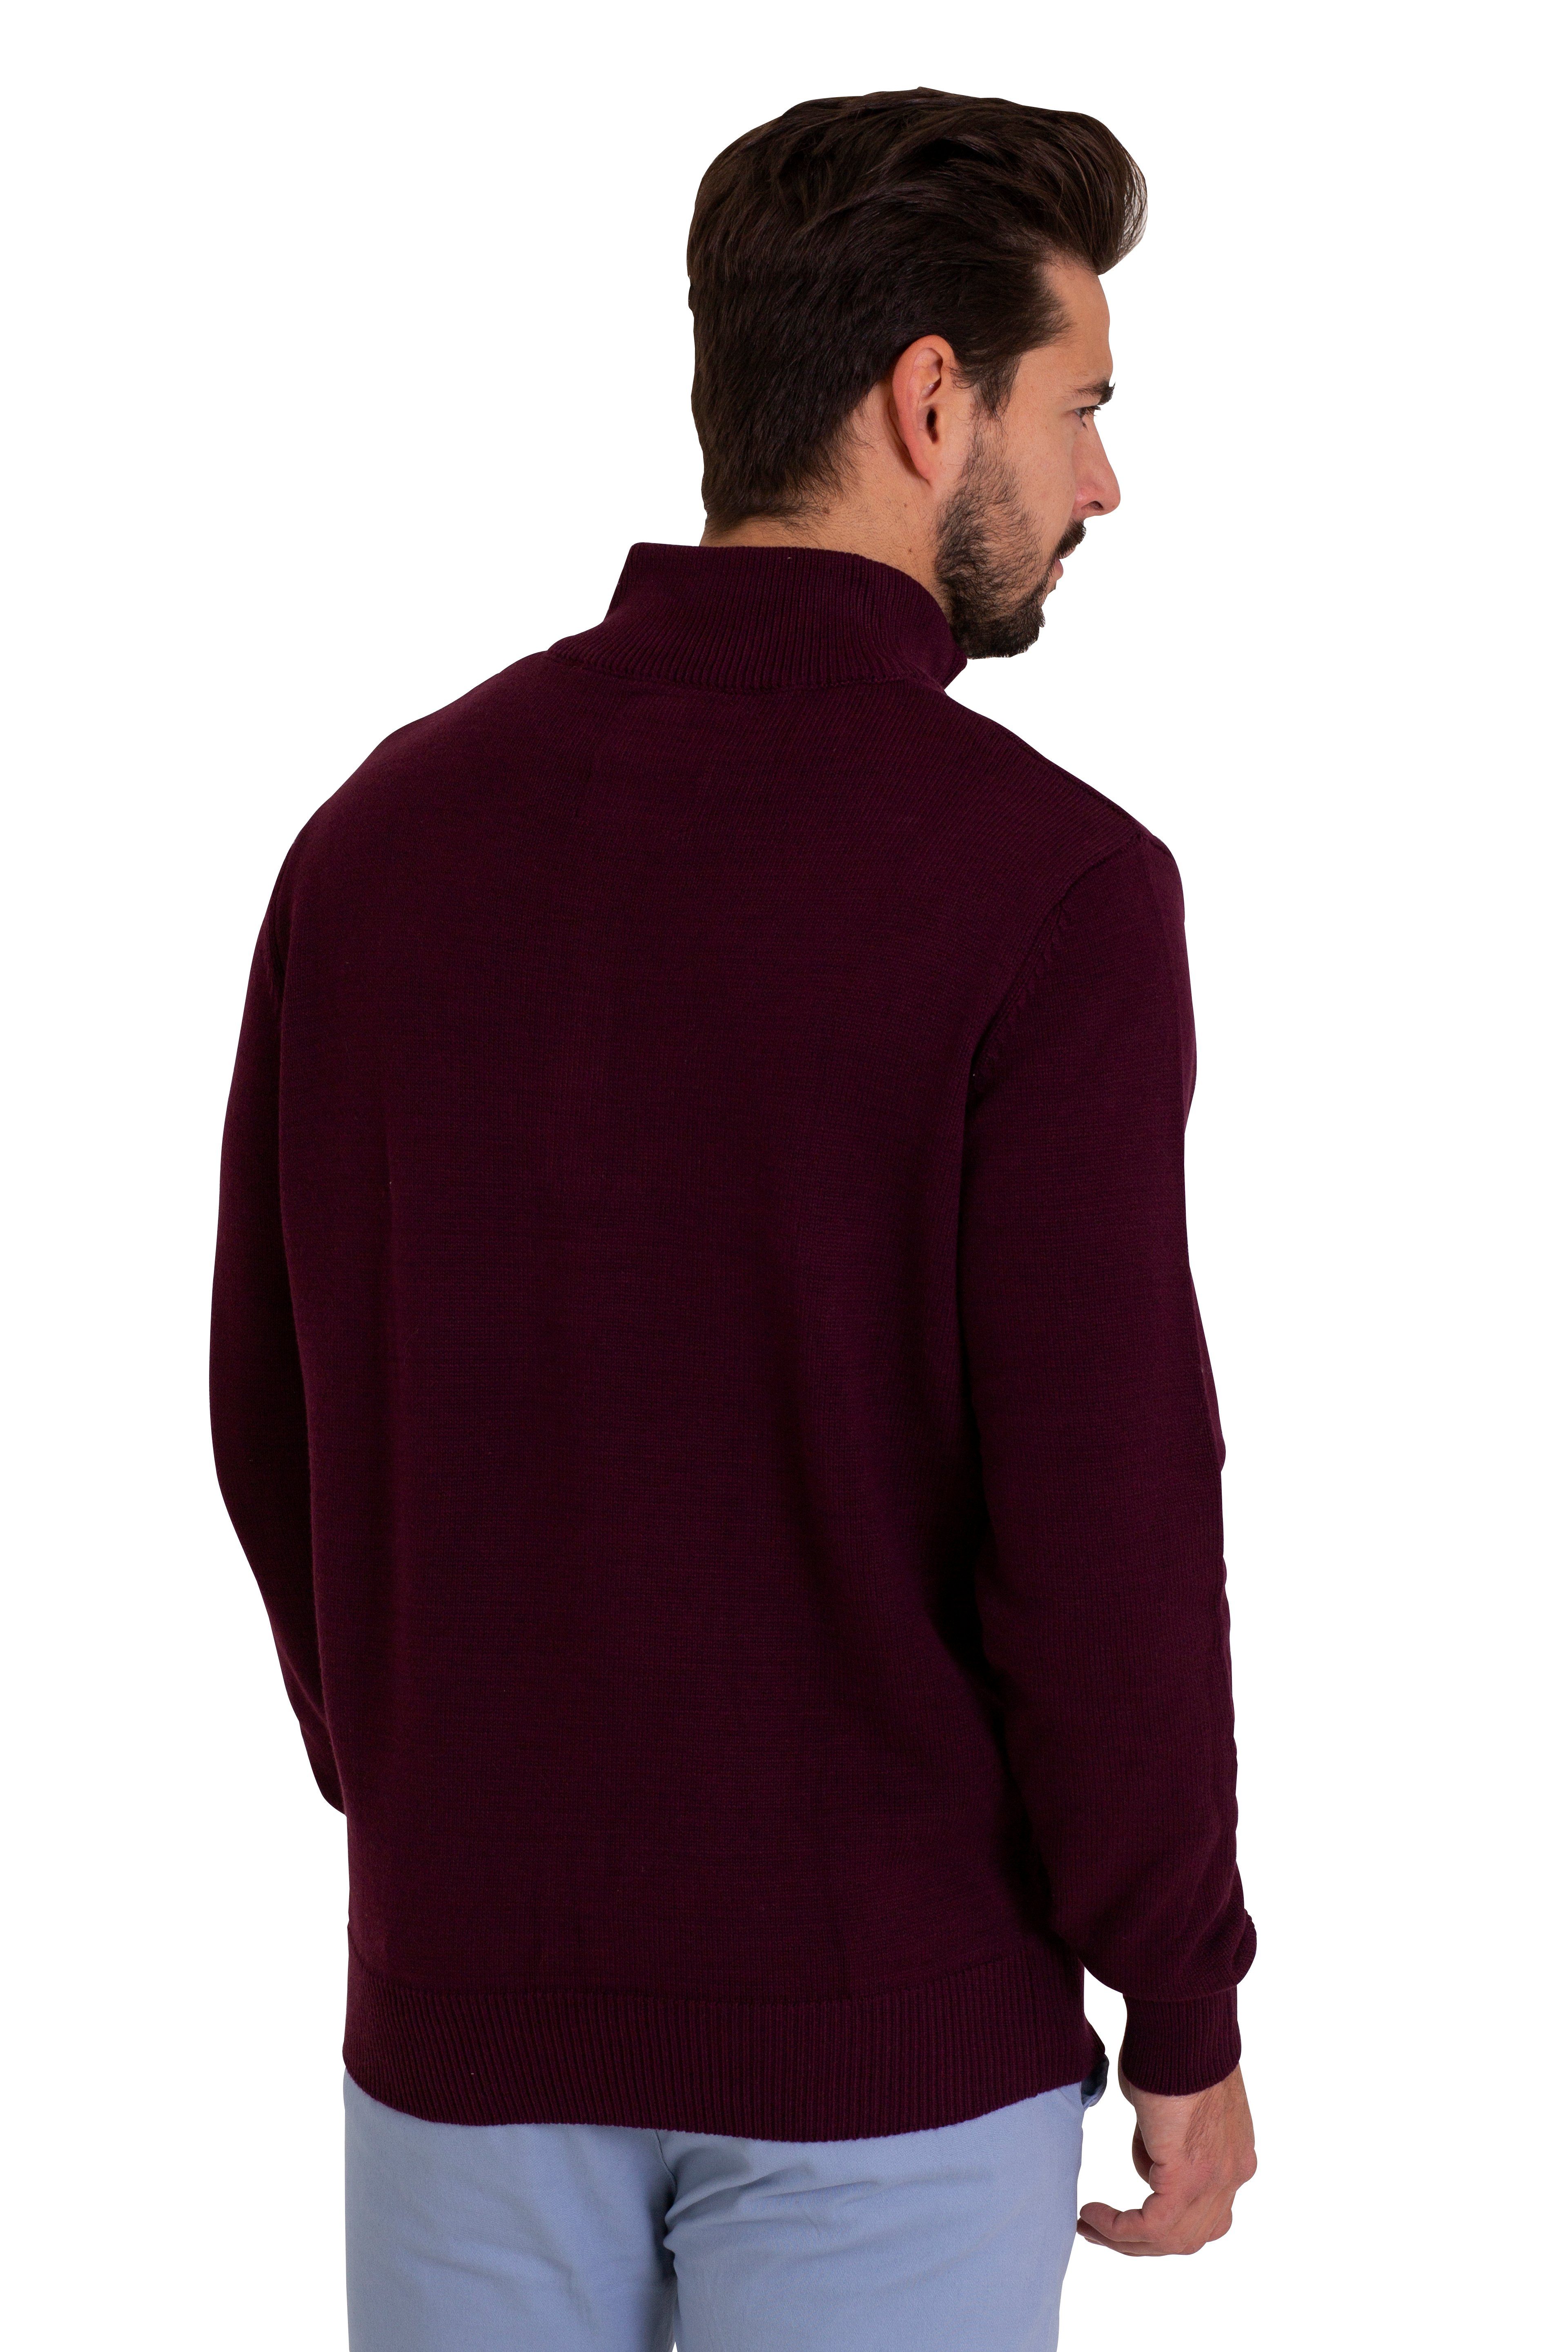 Sweater Sleeve Jumper Herren Troyer Burgundy Regular Strickpullover Fit Long Baumwoll Pullover BlauerHafen